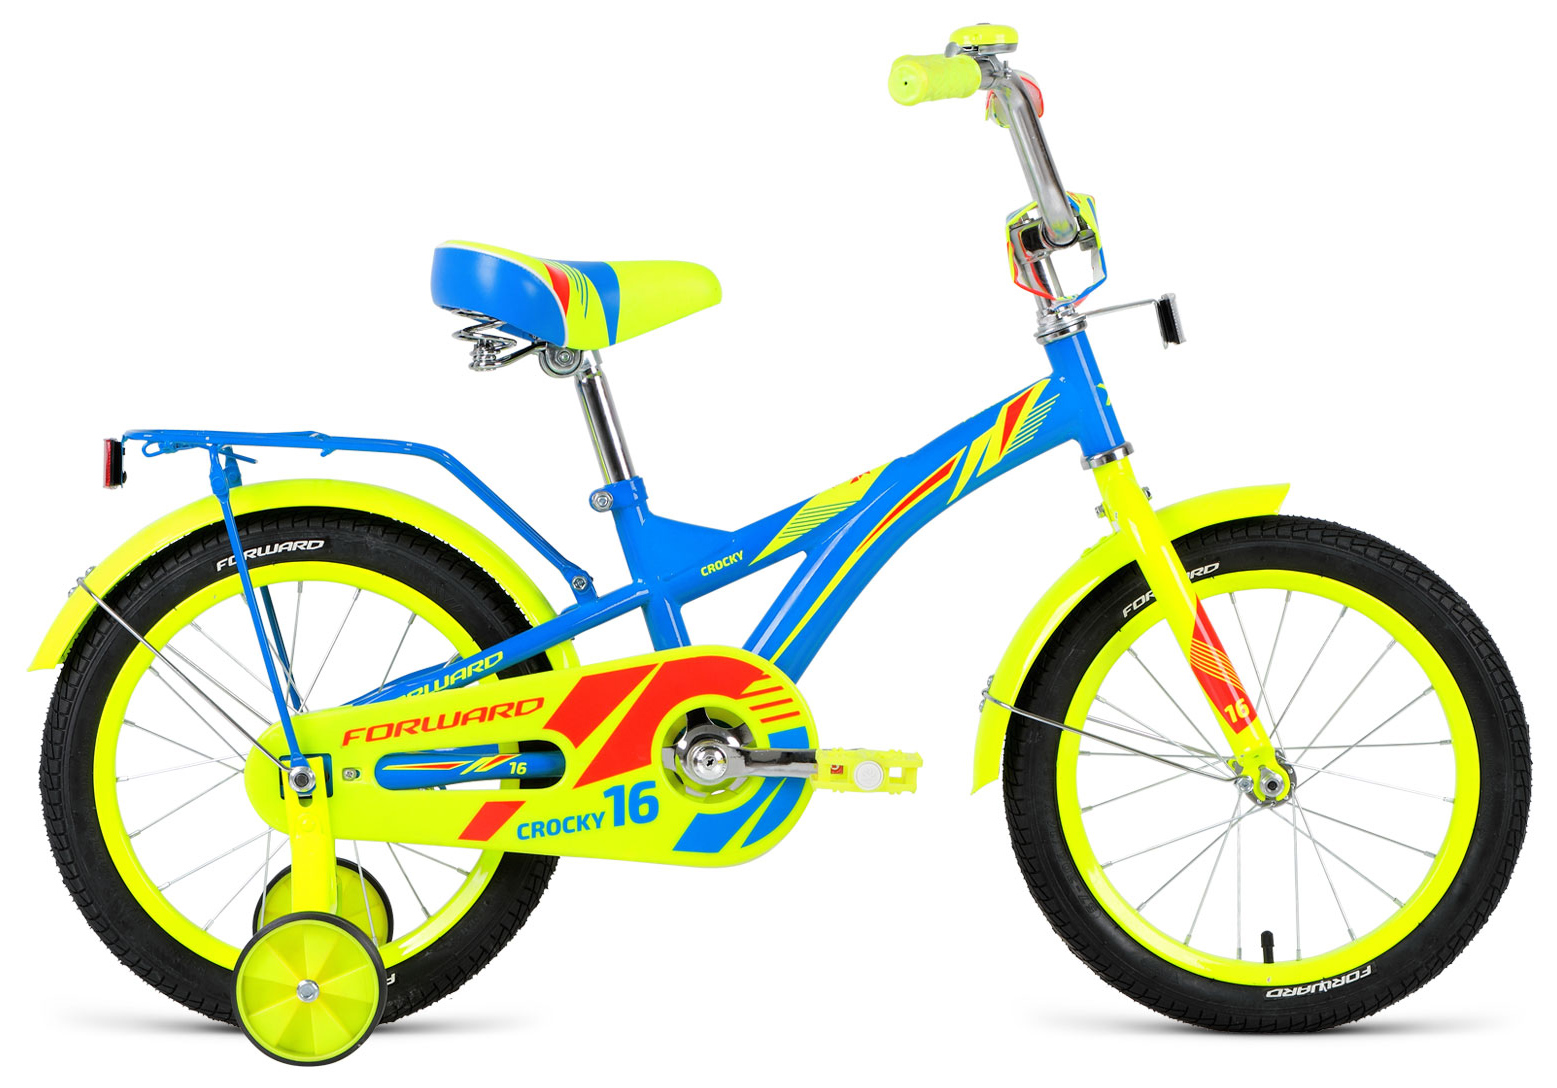  Отзывы о Трехколесный детский велосипед Forward Crocky 16 2019